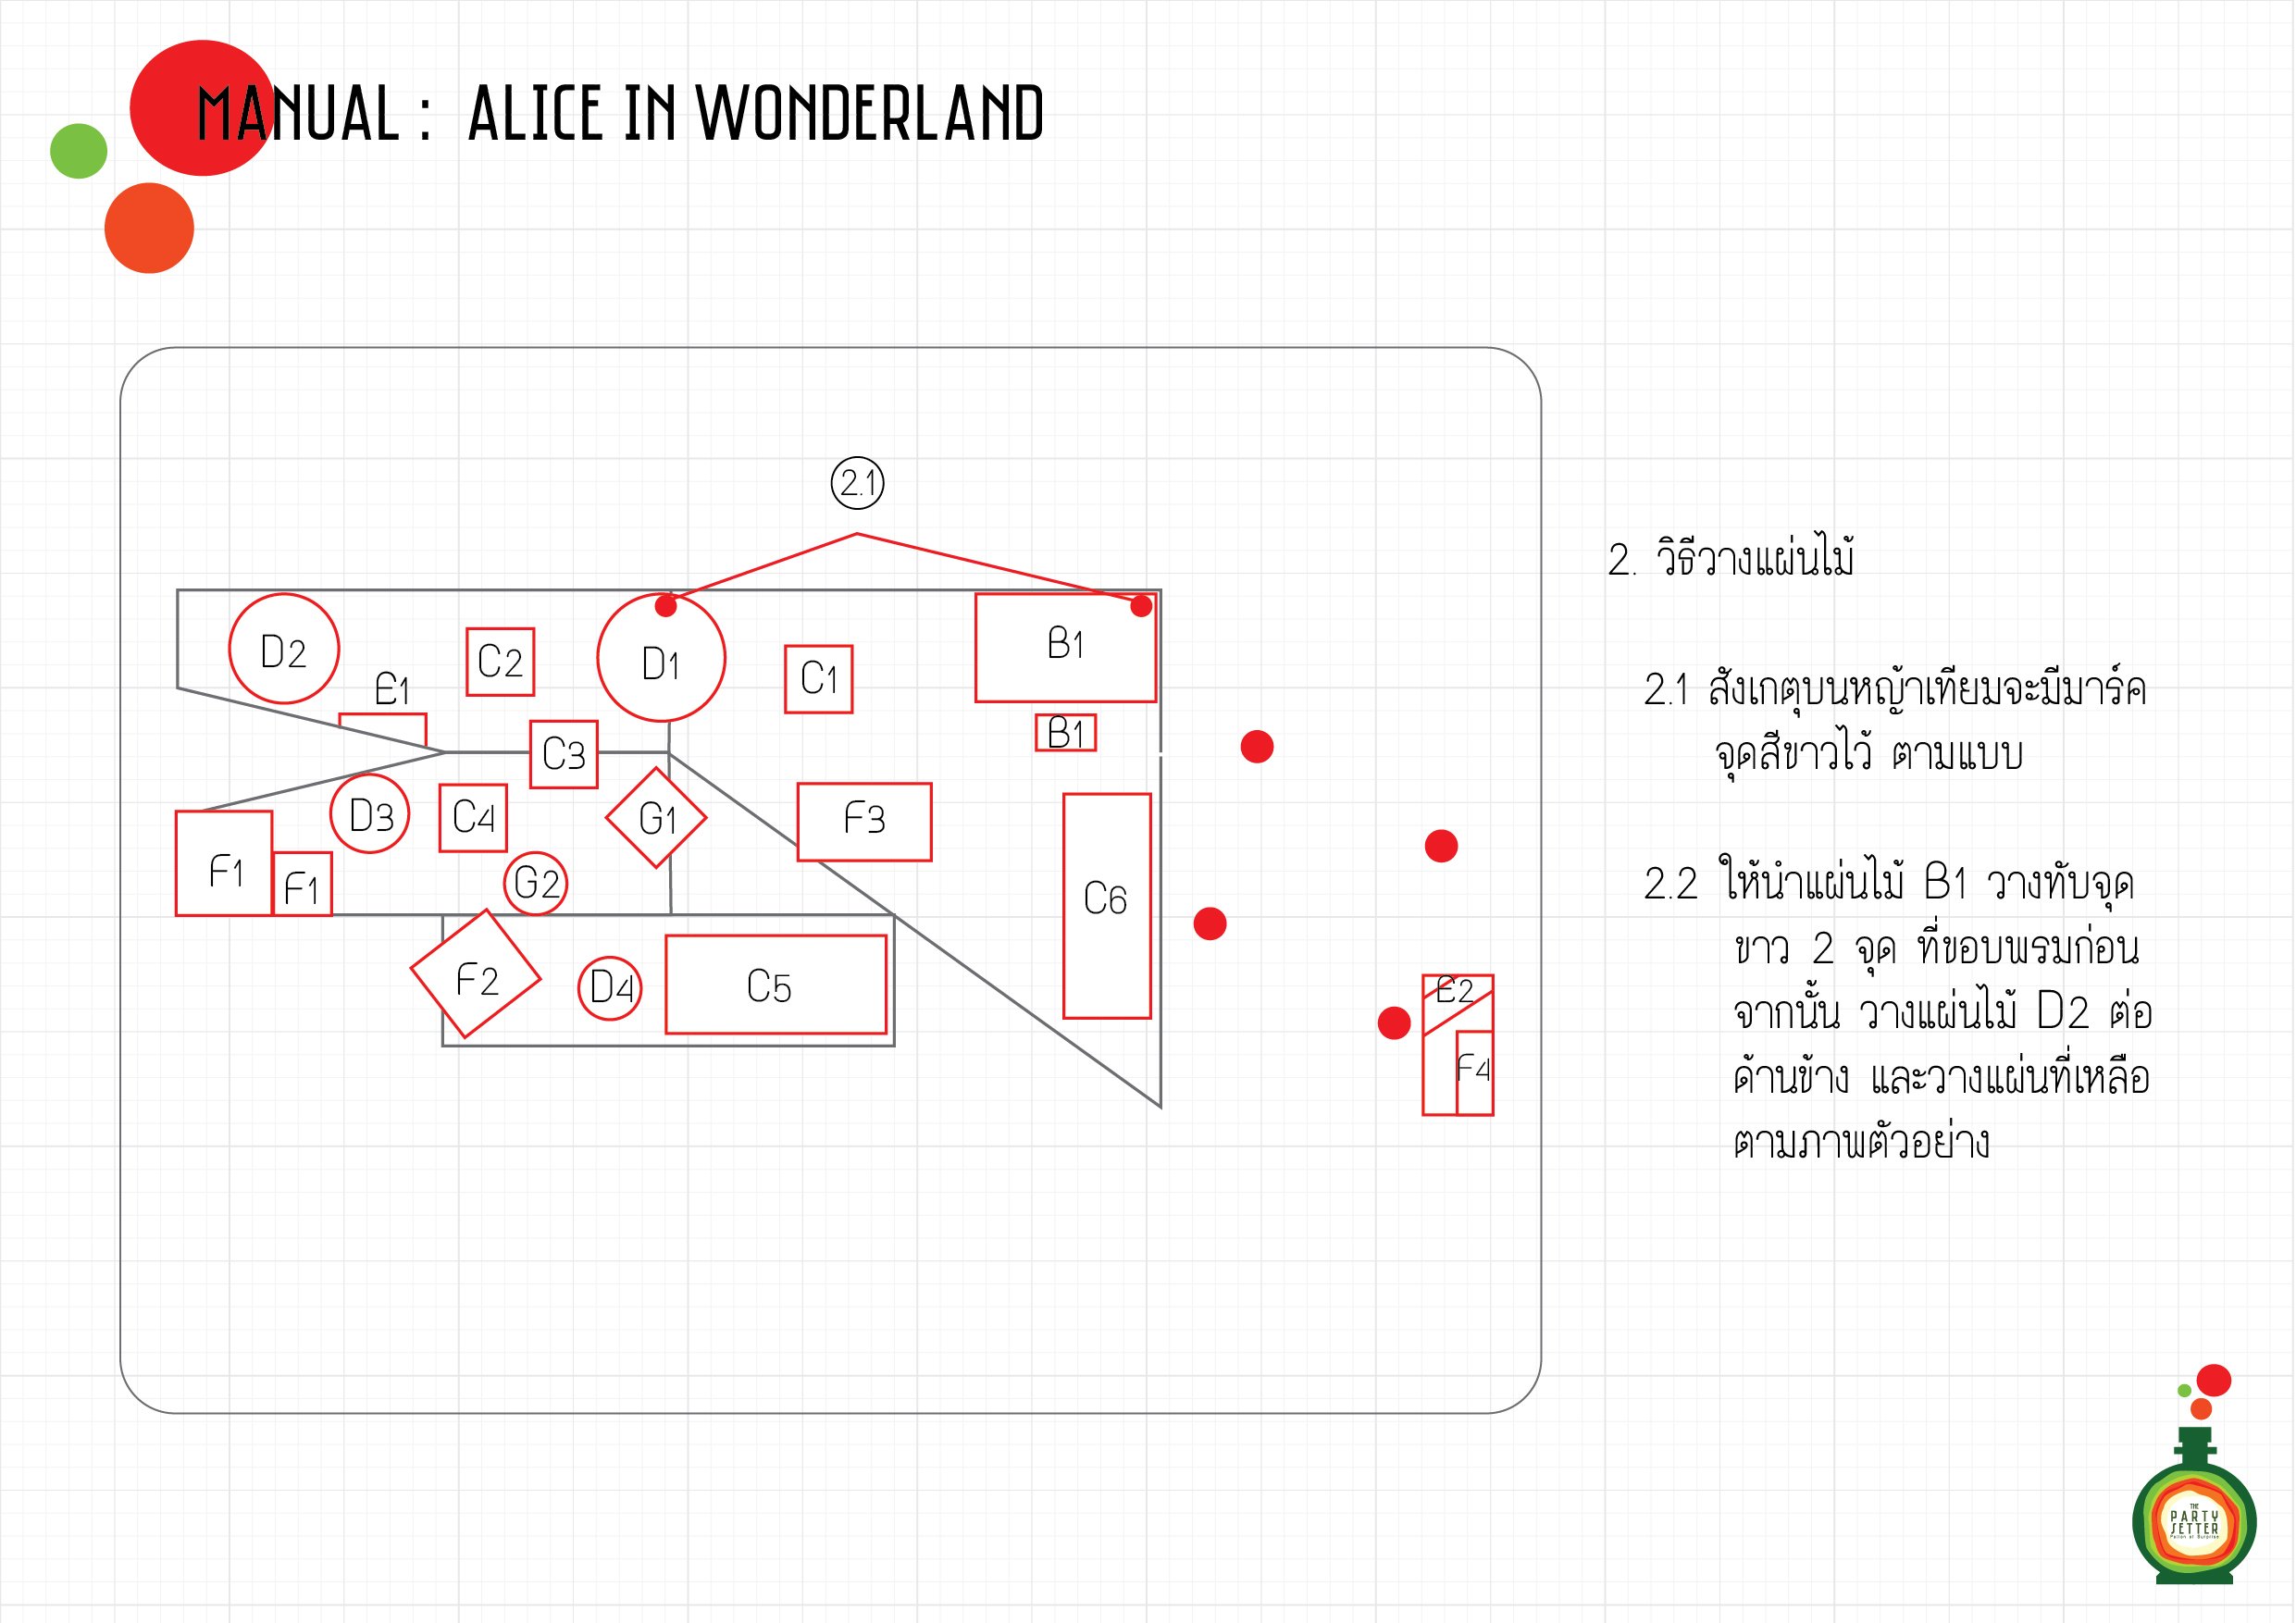 Manual_Alice in Wonderland_02-01.jpg